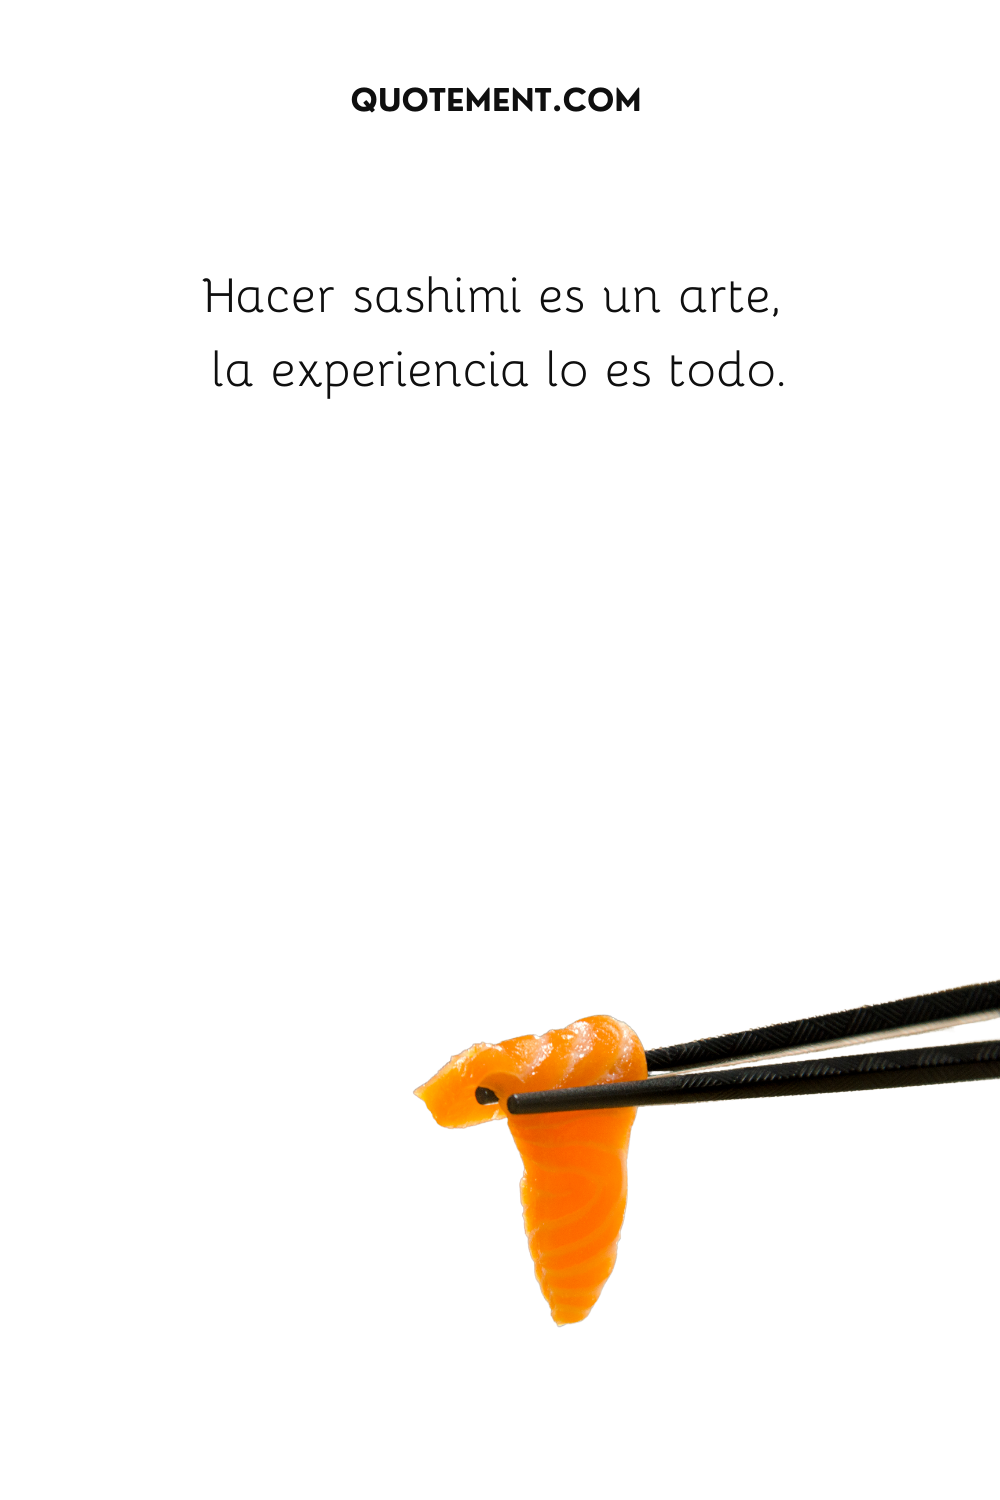 Hacer sashimi es un arte, la experiencia lo es todo.